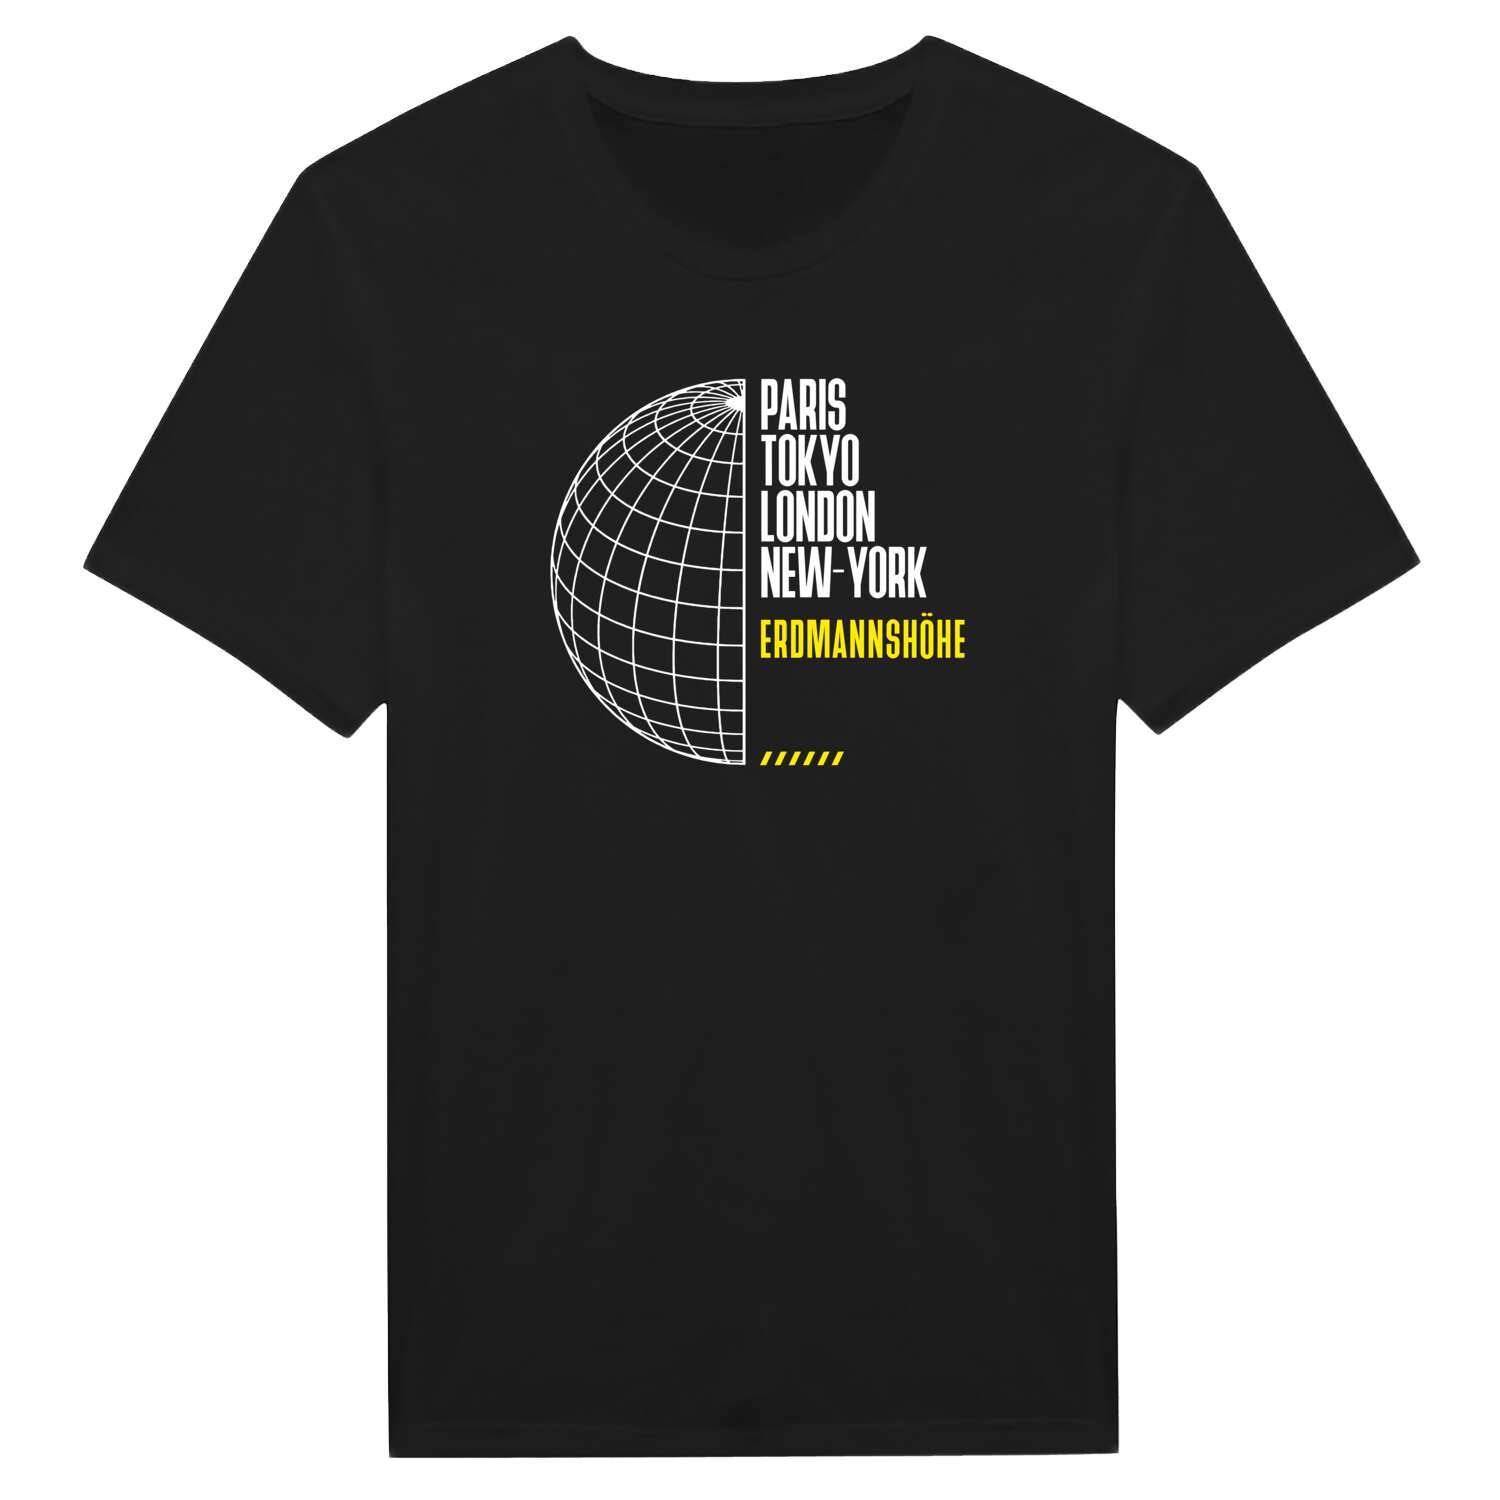 Erdmannshöhe T-Shirt »Paris Tokyo London«